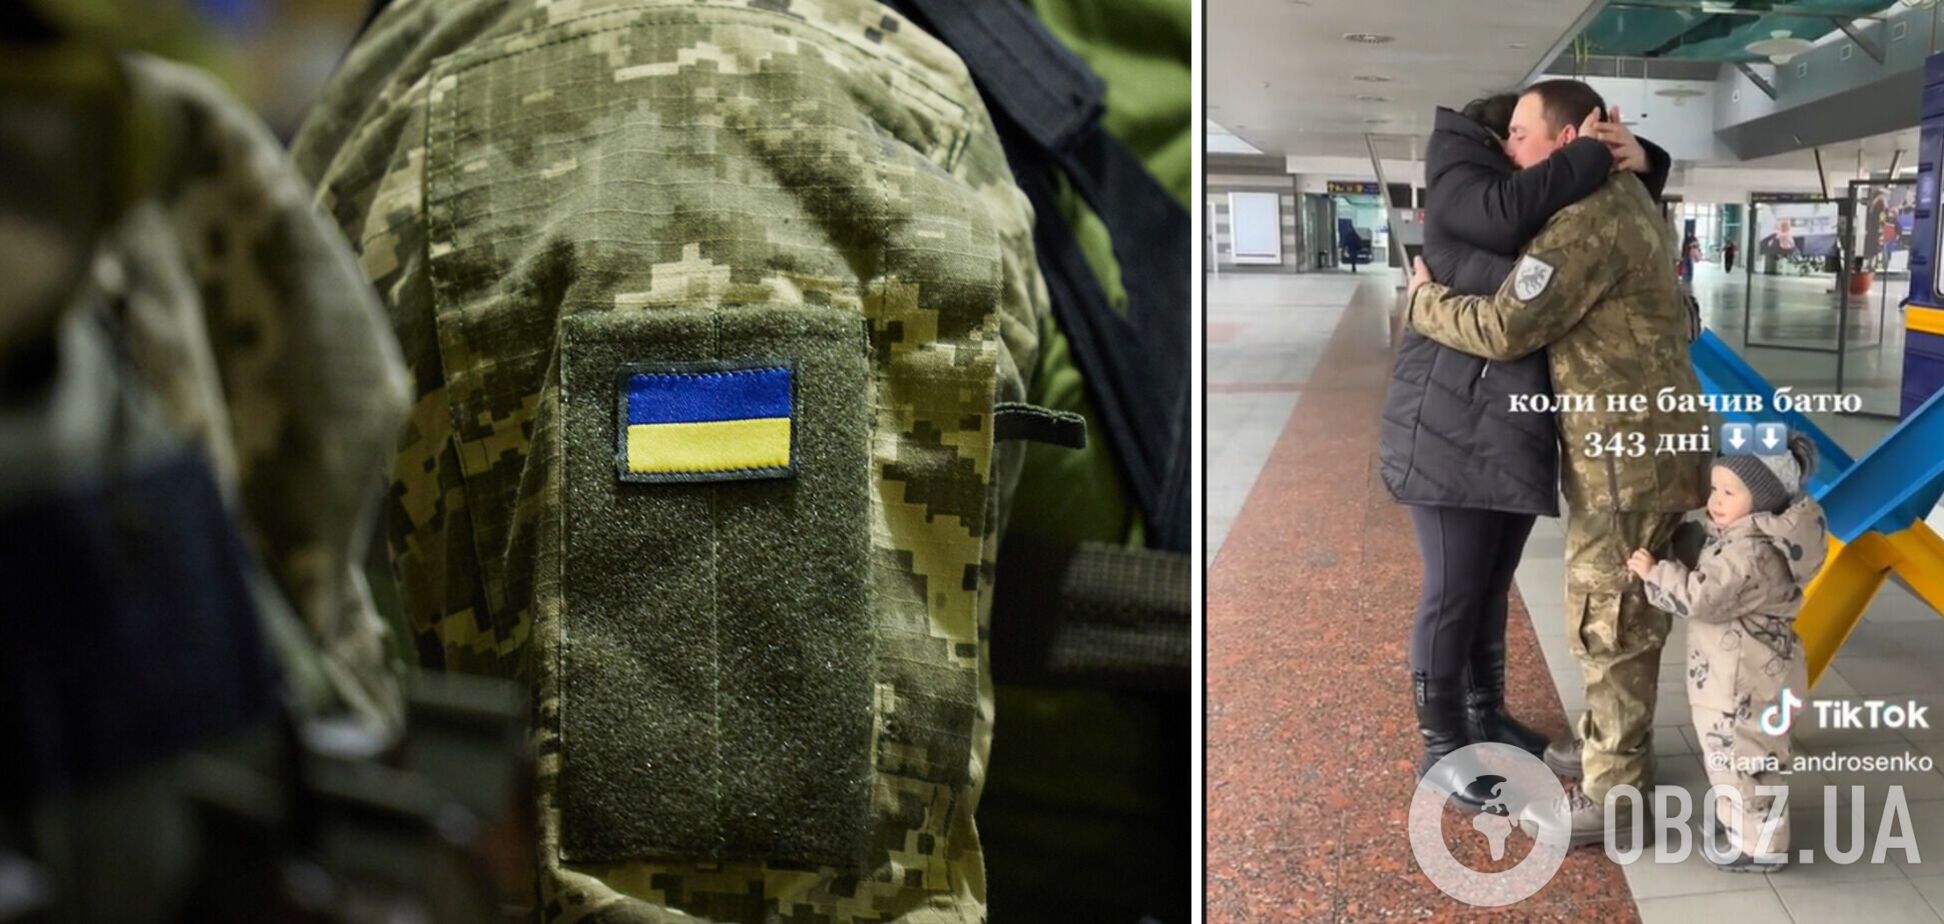 Не виделись 343 дня: сеть тронуло видео встречи защитника Украины с родными